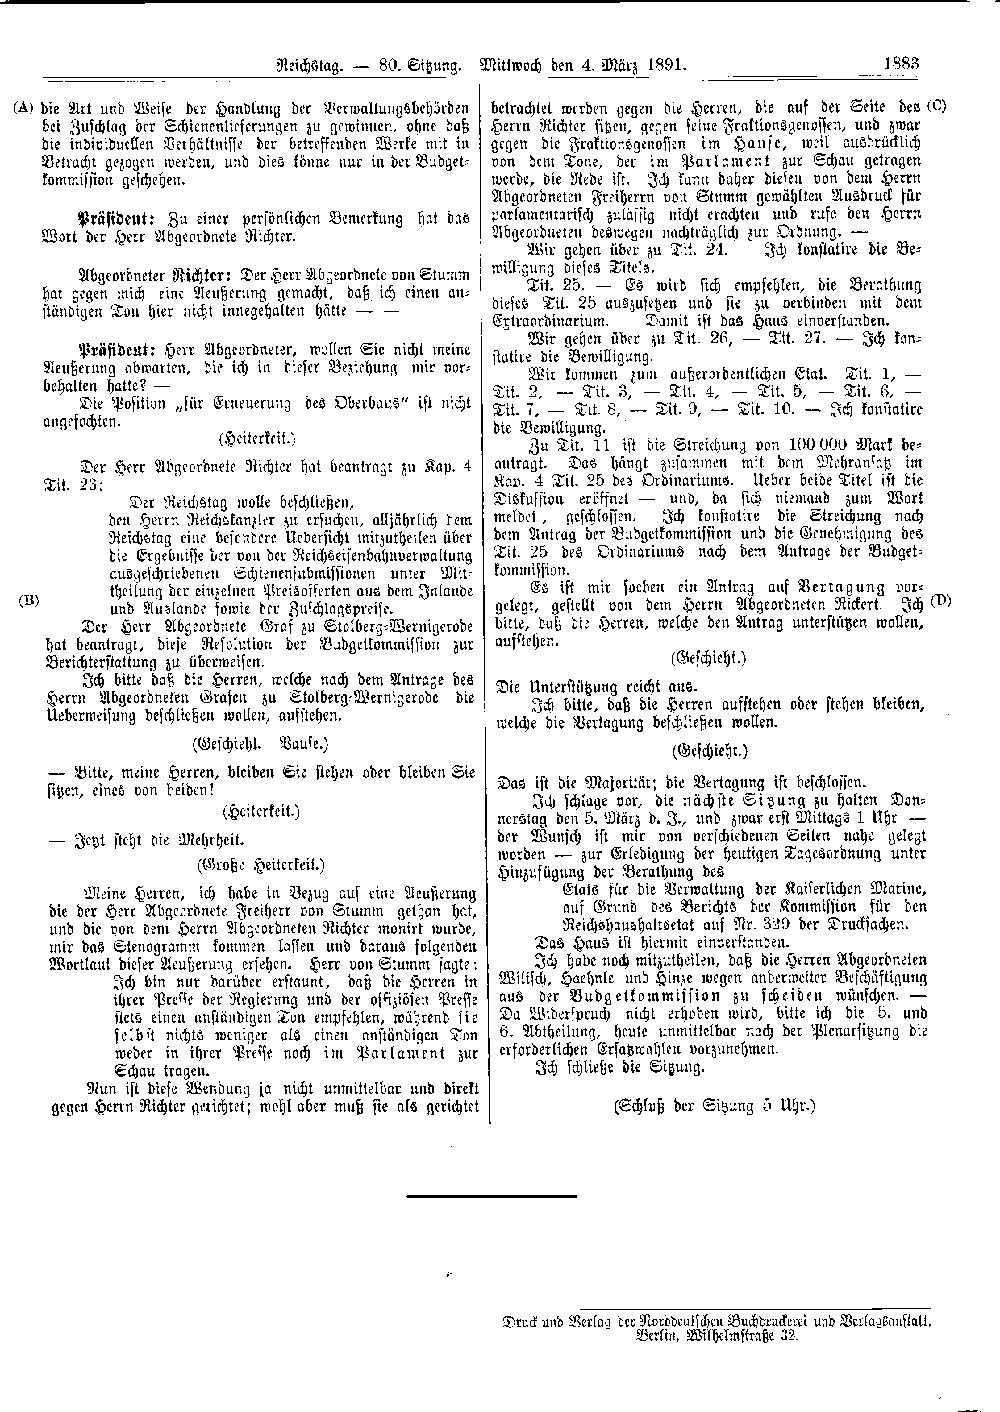 Scan der Seite 1883